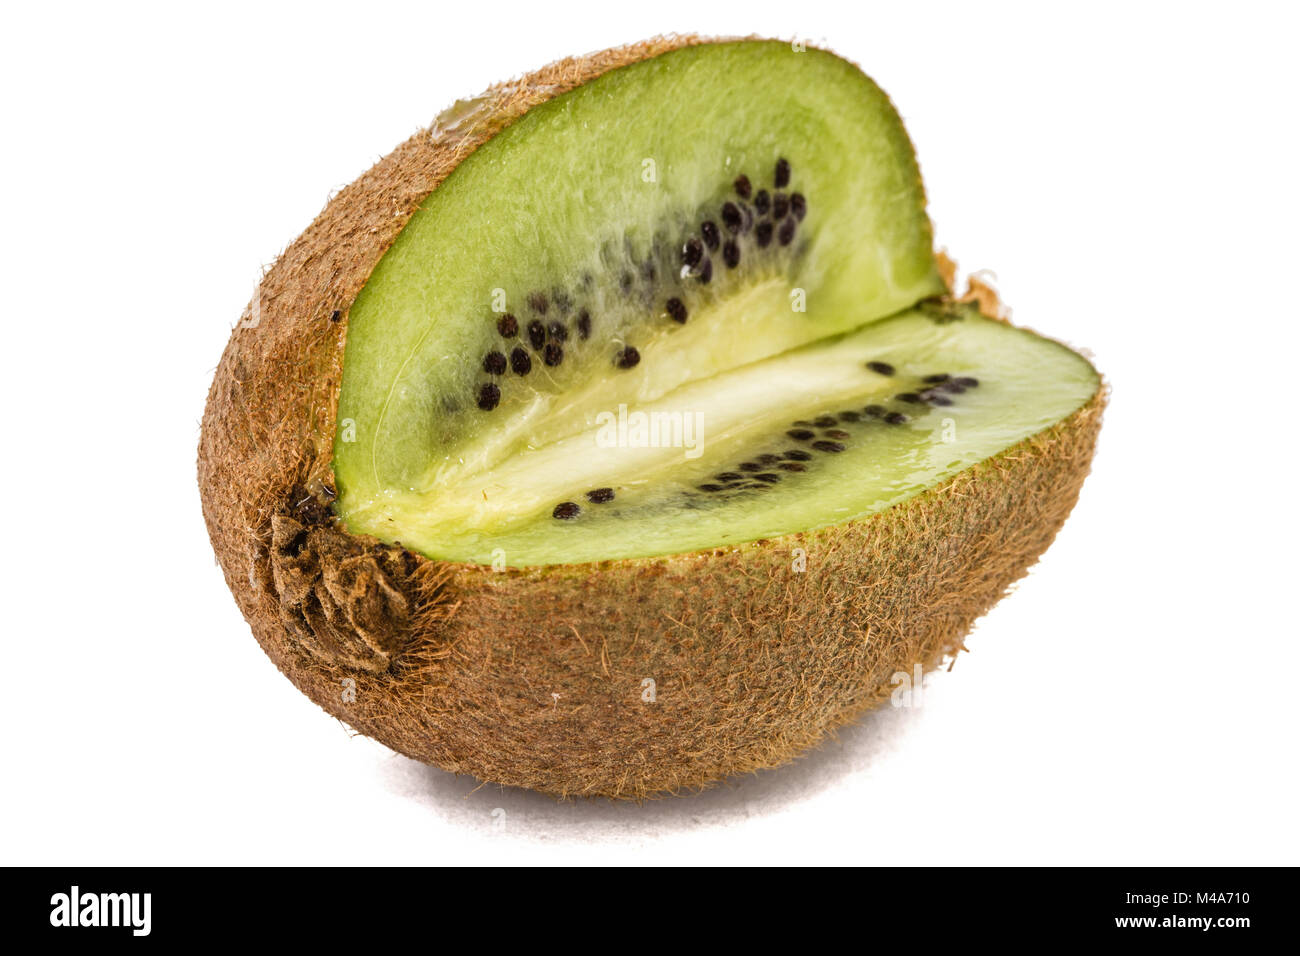 Juicy kiwi fruit, isolated on white background Stock Photo